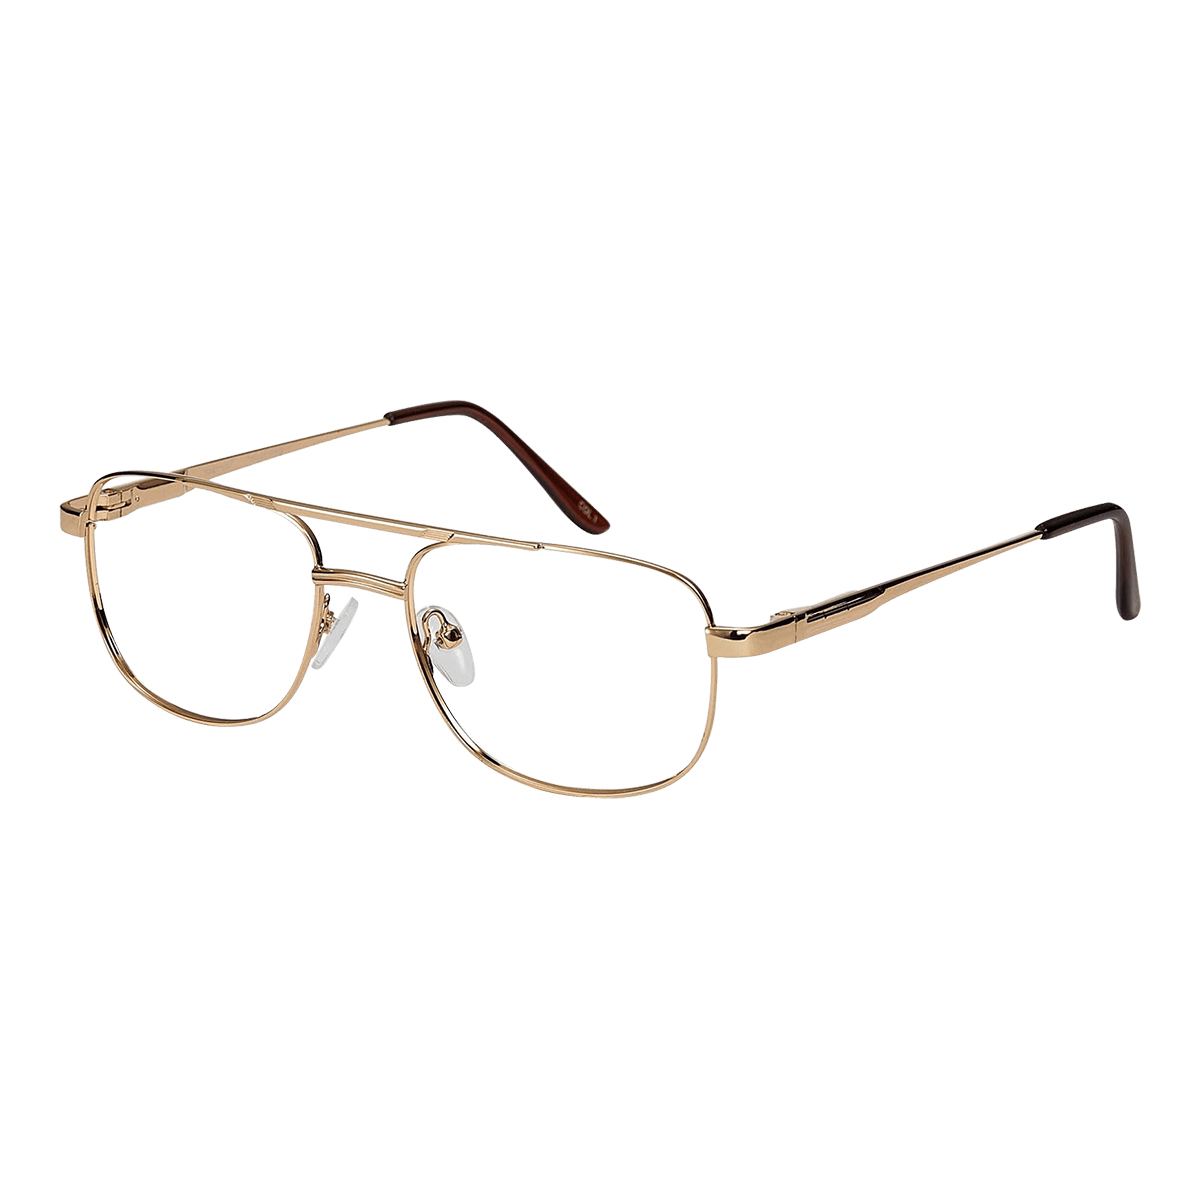 Holt - Aviator Gold Reading Glasses for Men